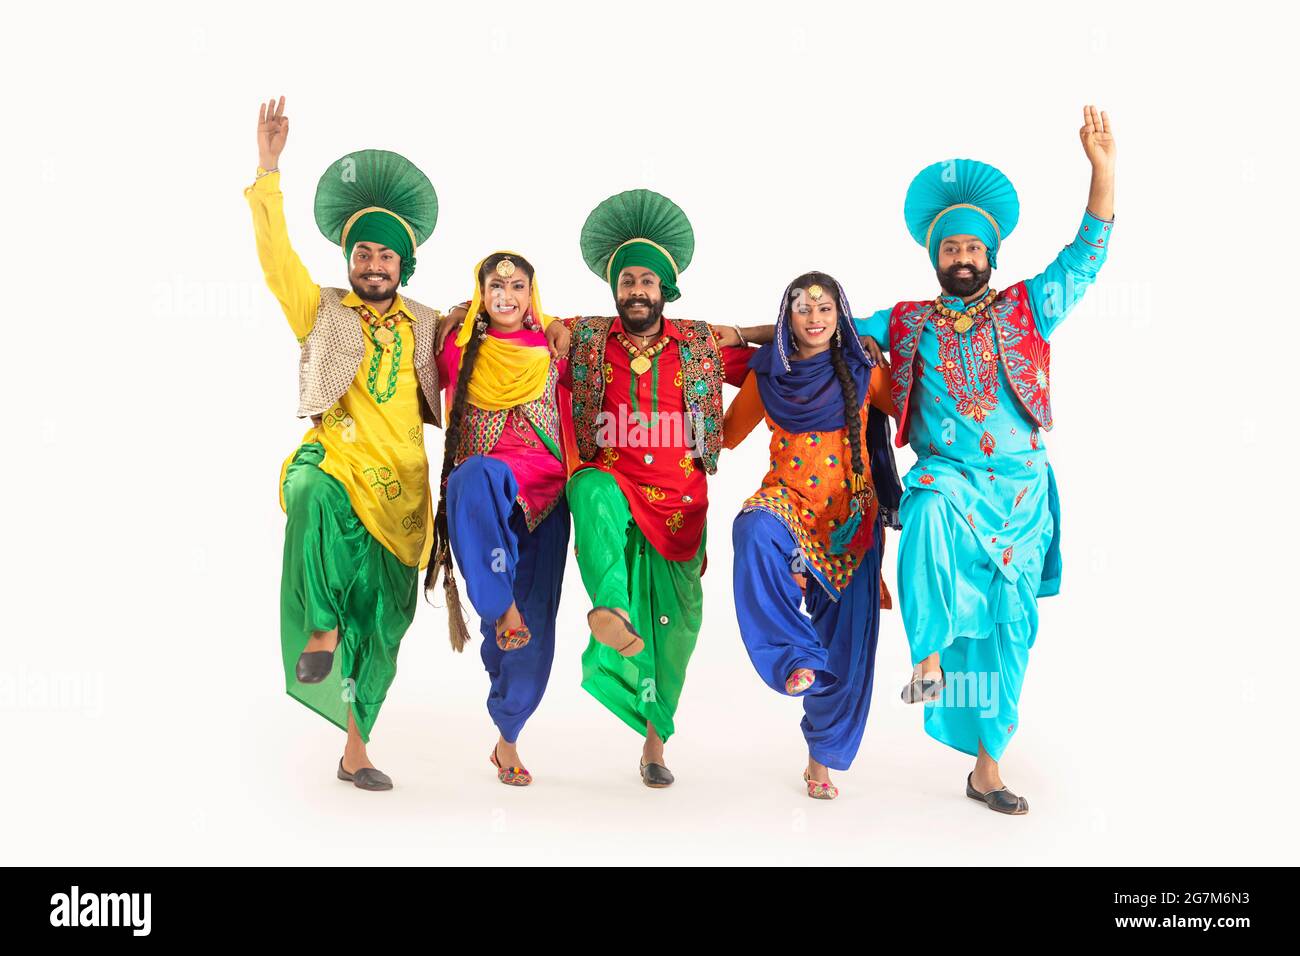 Eine Truppe von Punjabi Folk-Tänzern, die in Kostümen gekleidet sind und gemeinsam einen Tanzschritt machen. Stockfoto